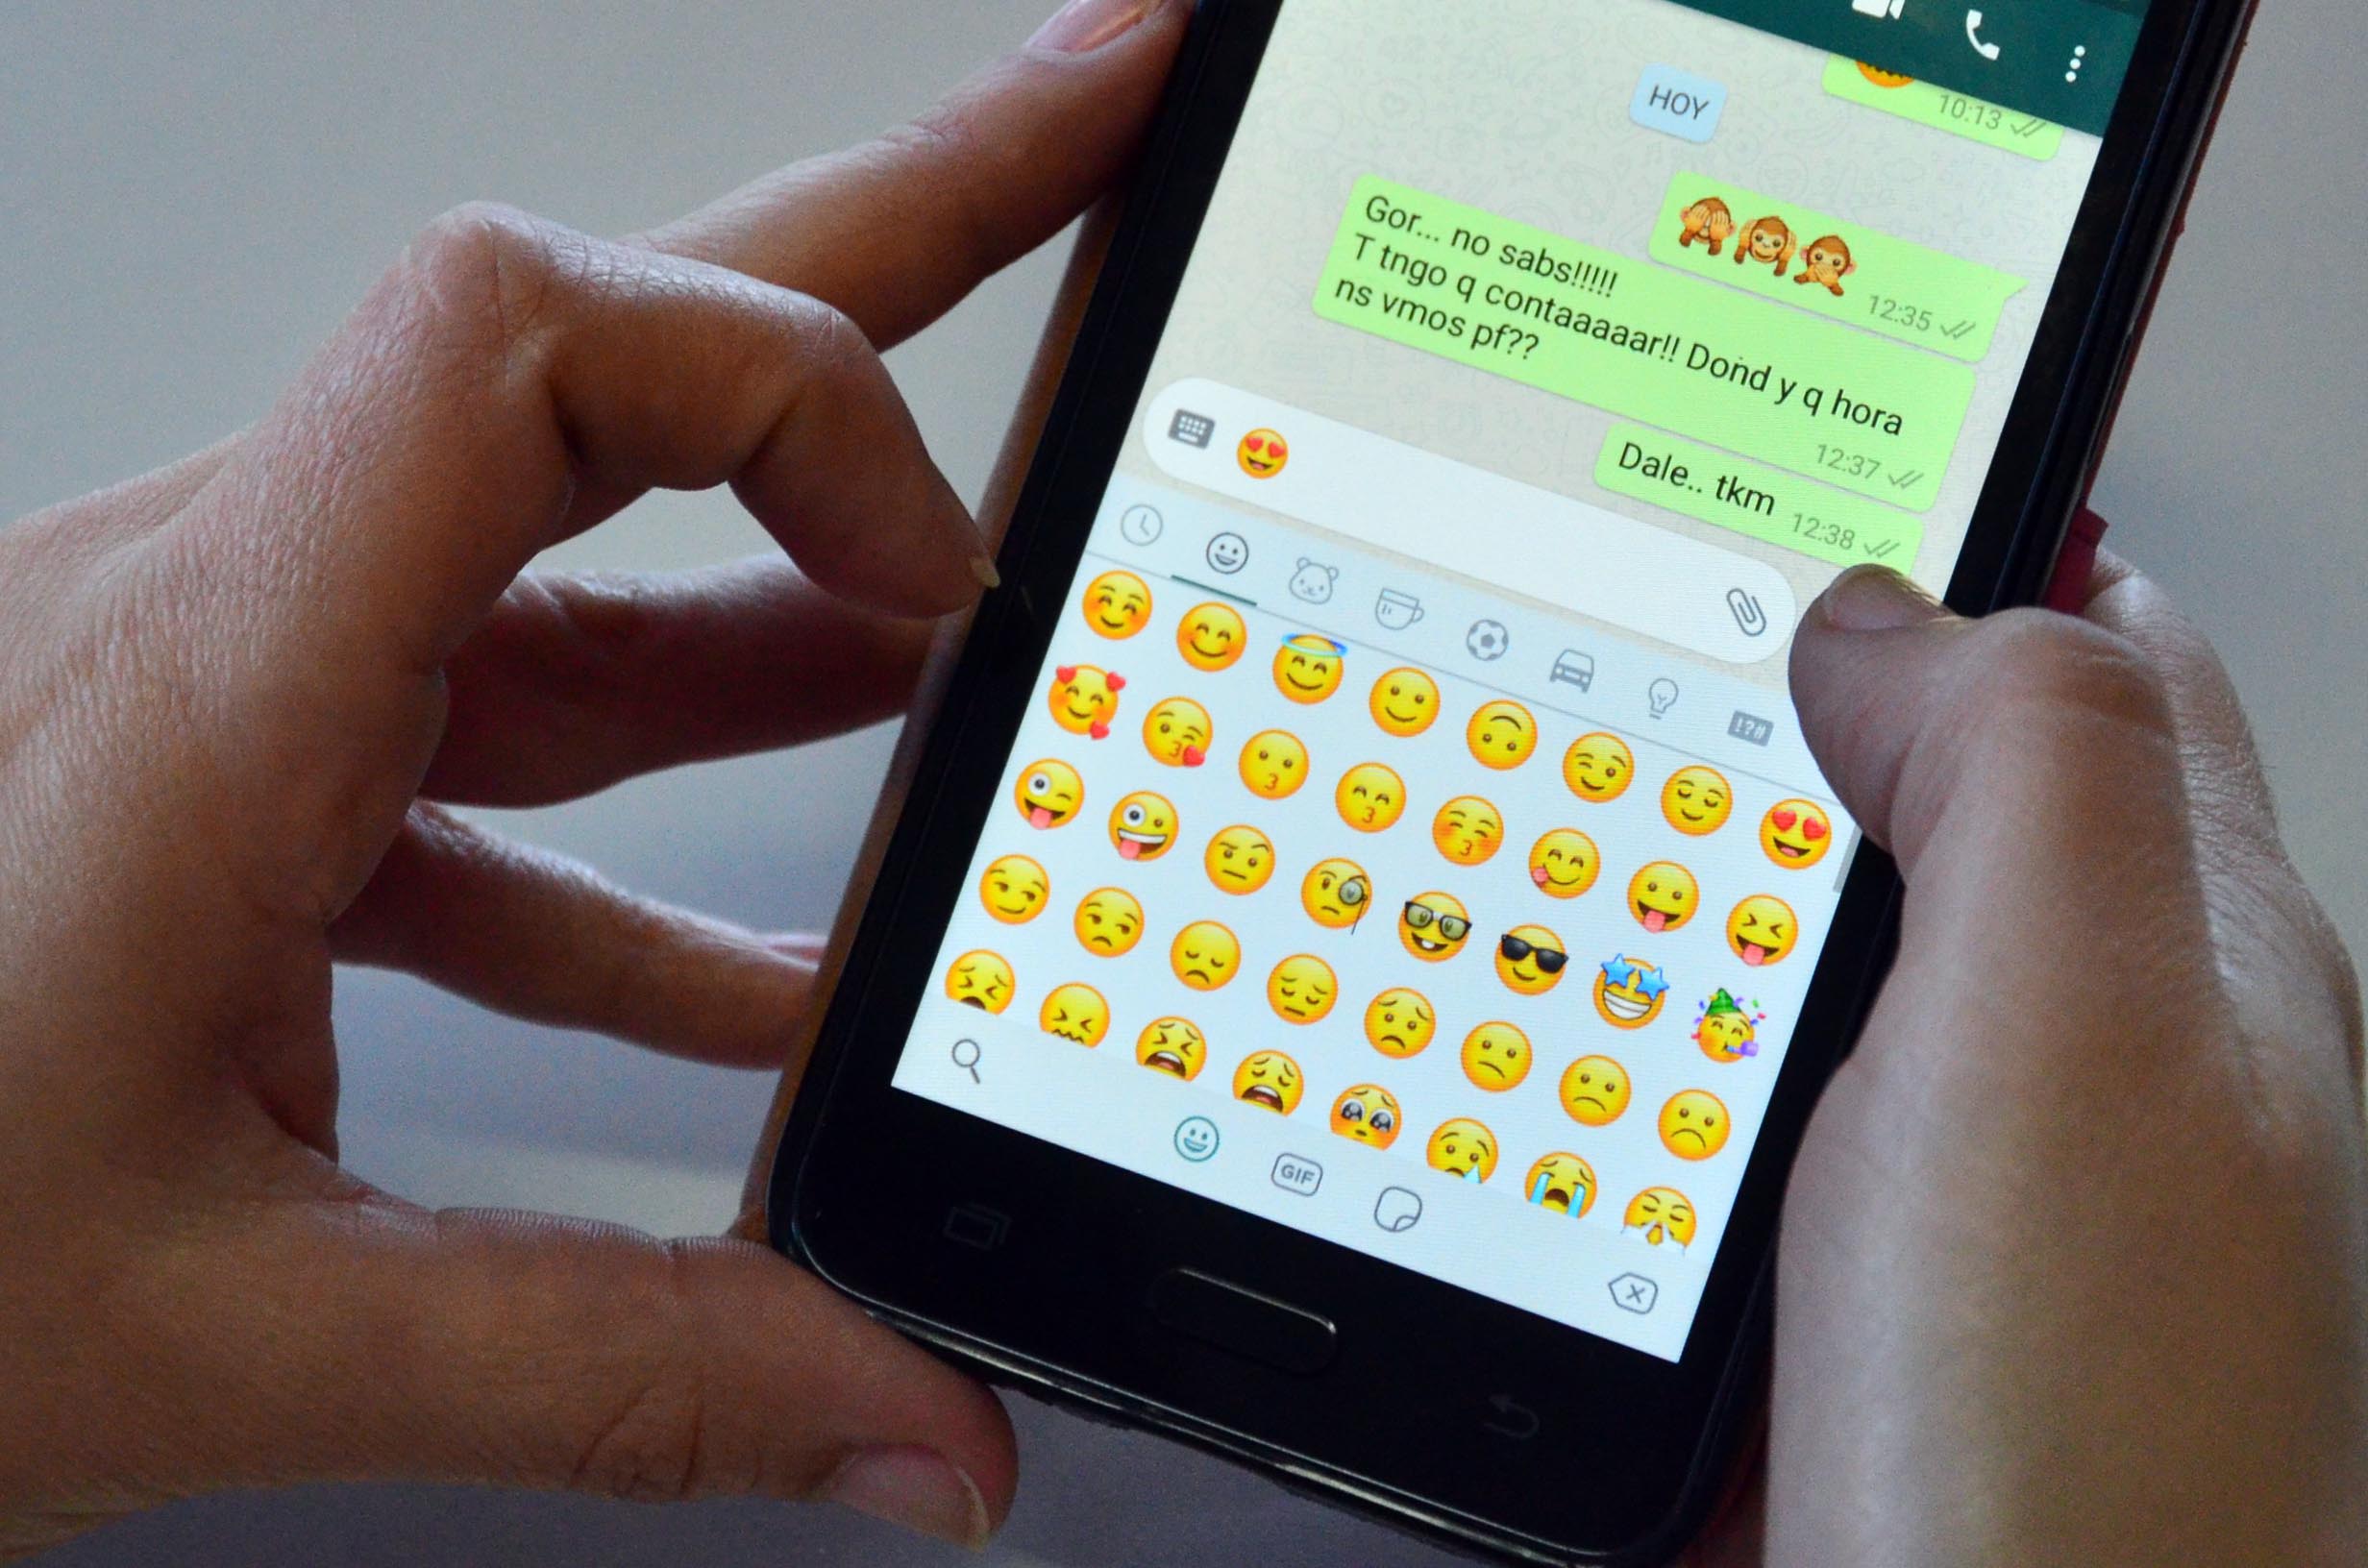 Los emojis se utilizan habitualmente en distintas conservaciones por chats. Foto: Marcelo Ochoa